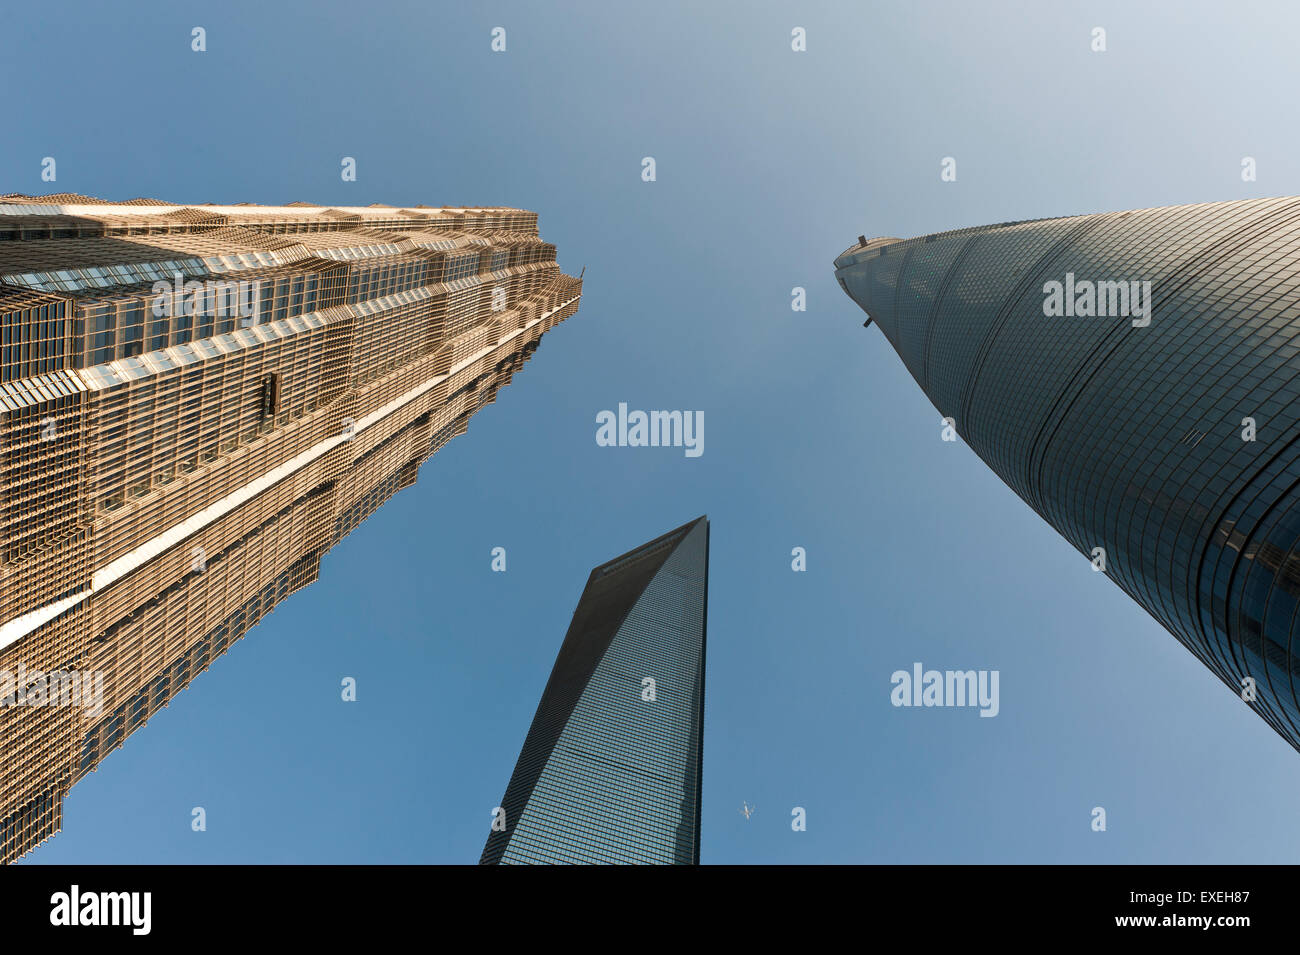 Des gratte-ciel, tour Jin Mao sur la gauche, sur la droite de la Tour de Shanghai, et SWFC Shanghai World Financial Center au milieu Banque D'Images